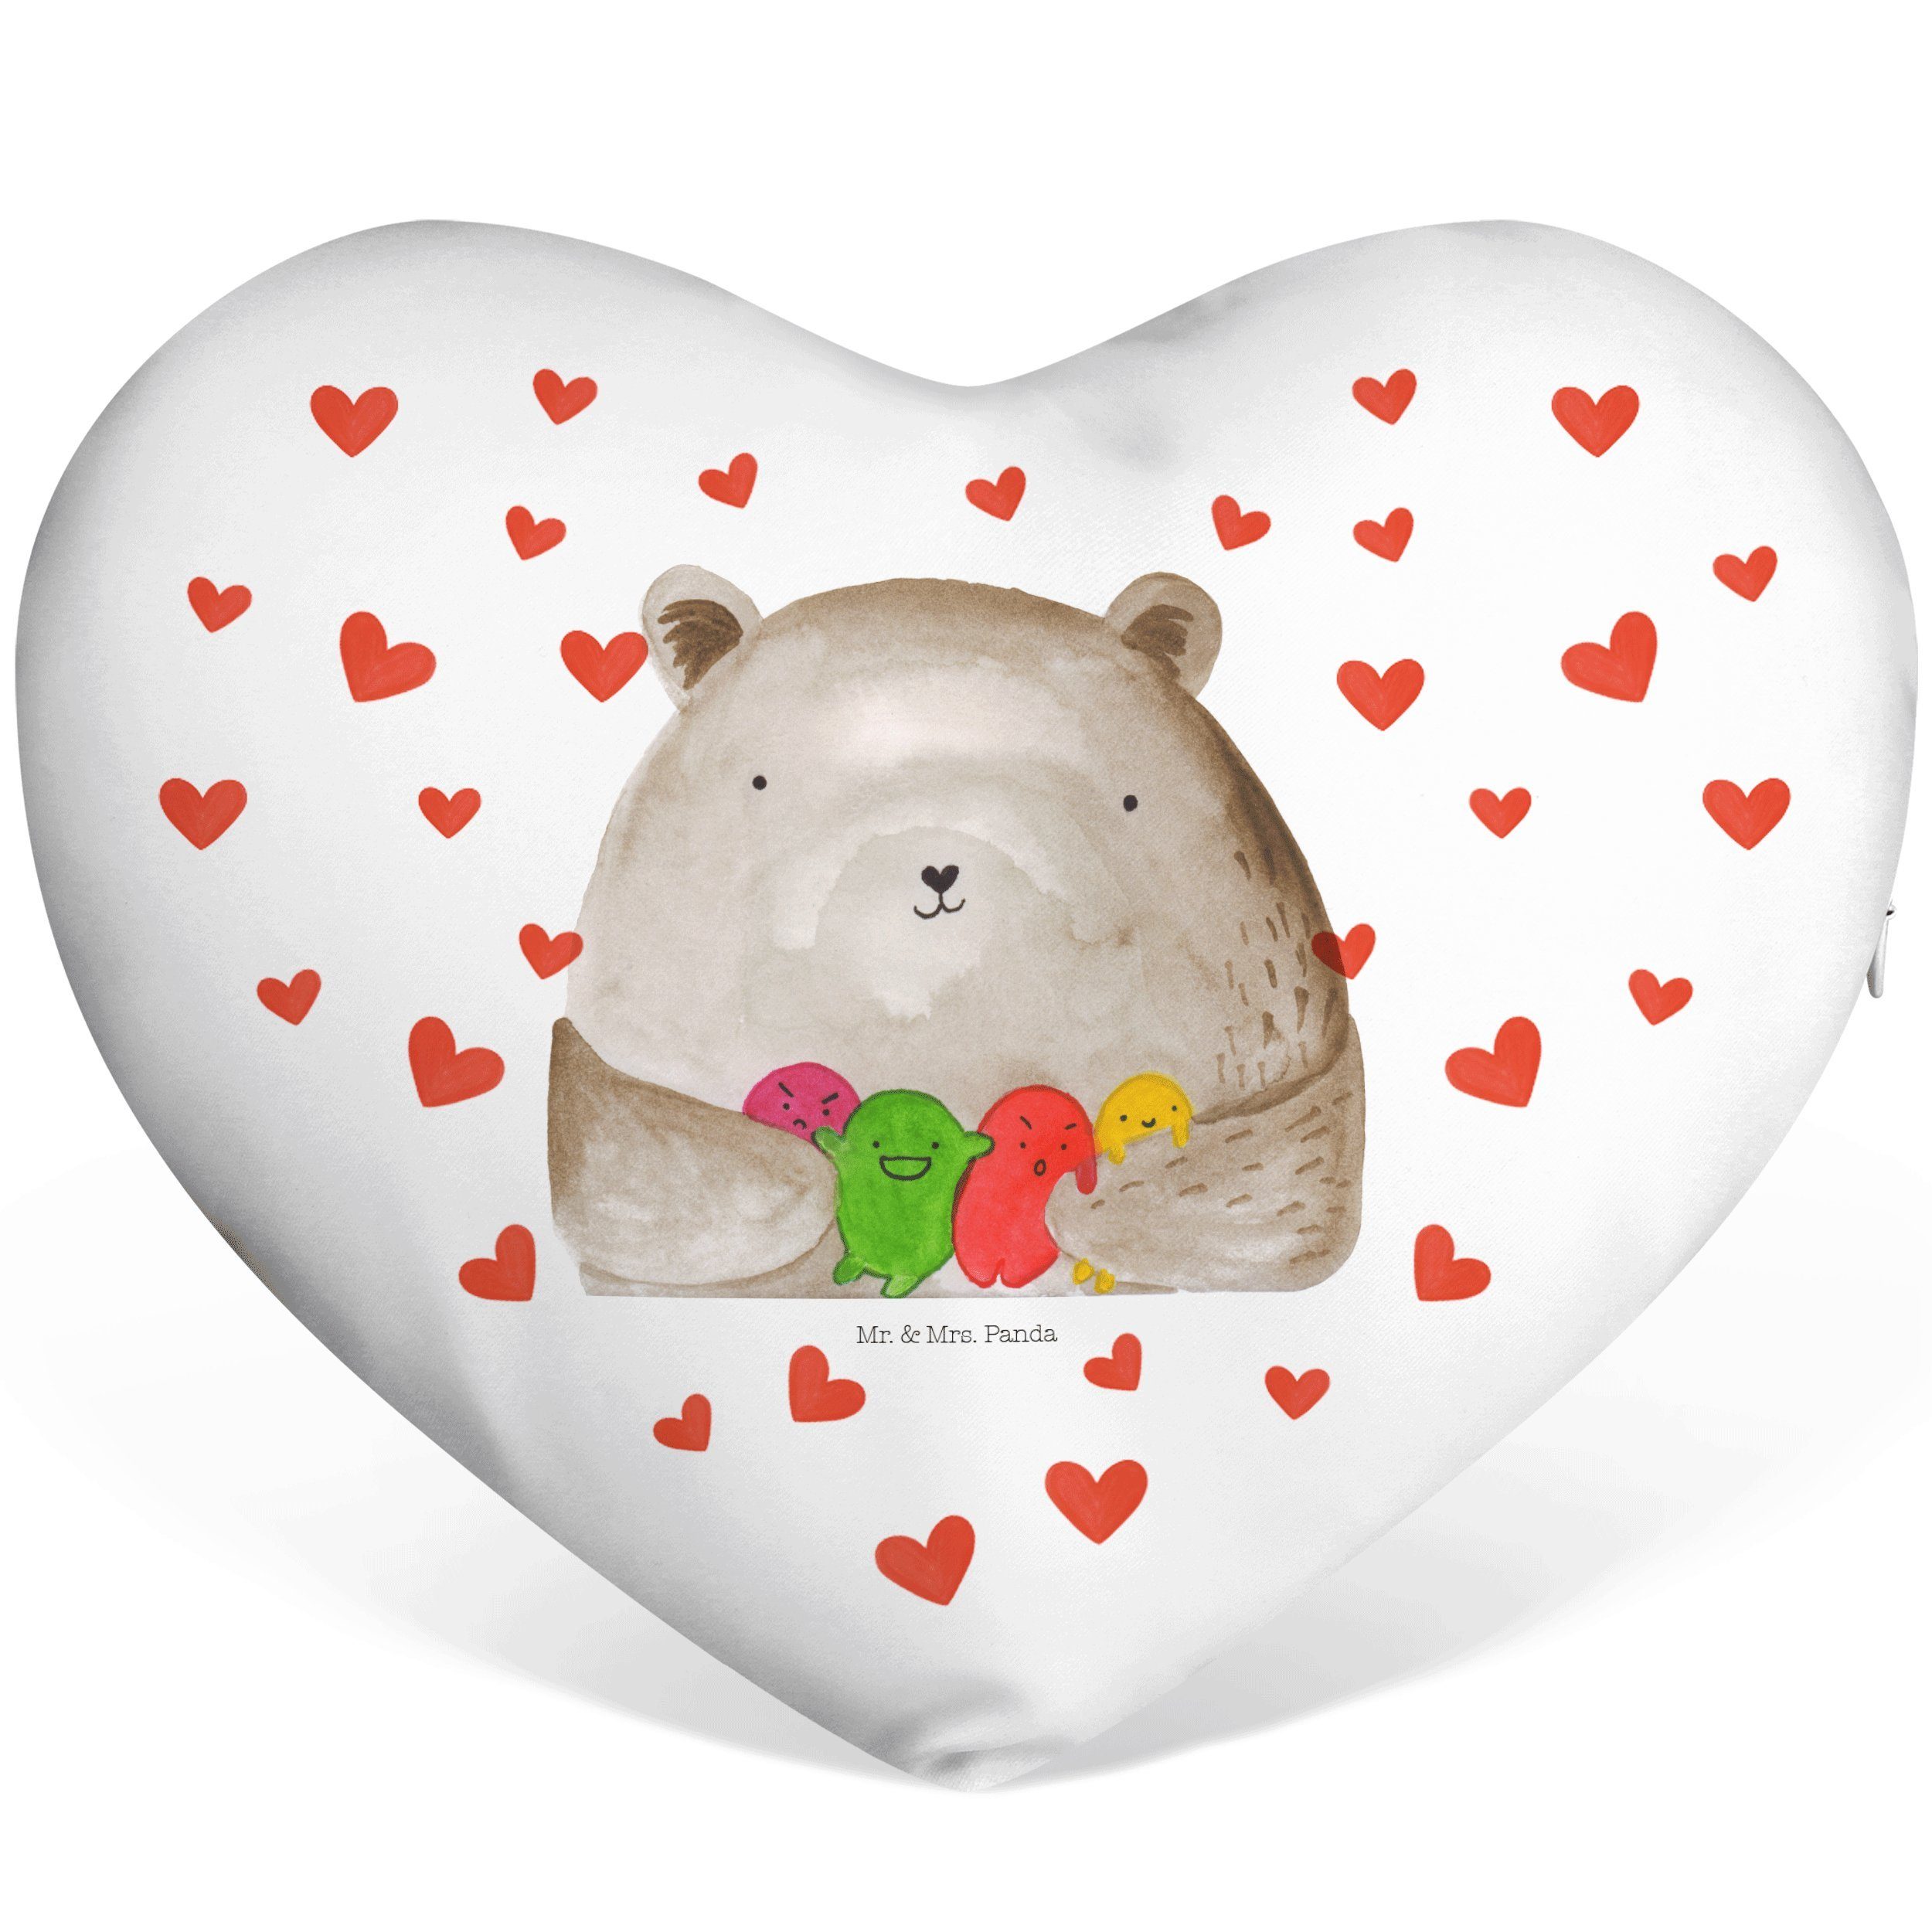 Mr. & Mrs. Panda Verrück Dekokissen Kissen, - - Weiß Geschenk, Bär Durchgedreht, Gefühl Teddybär